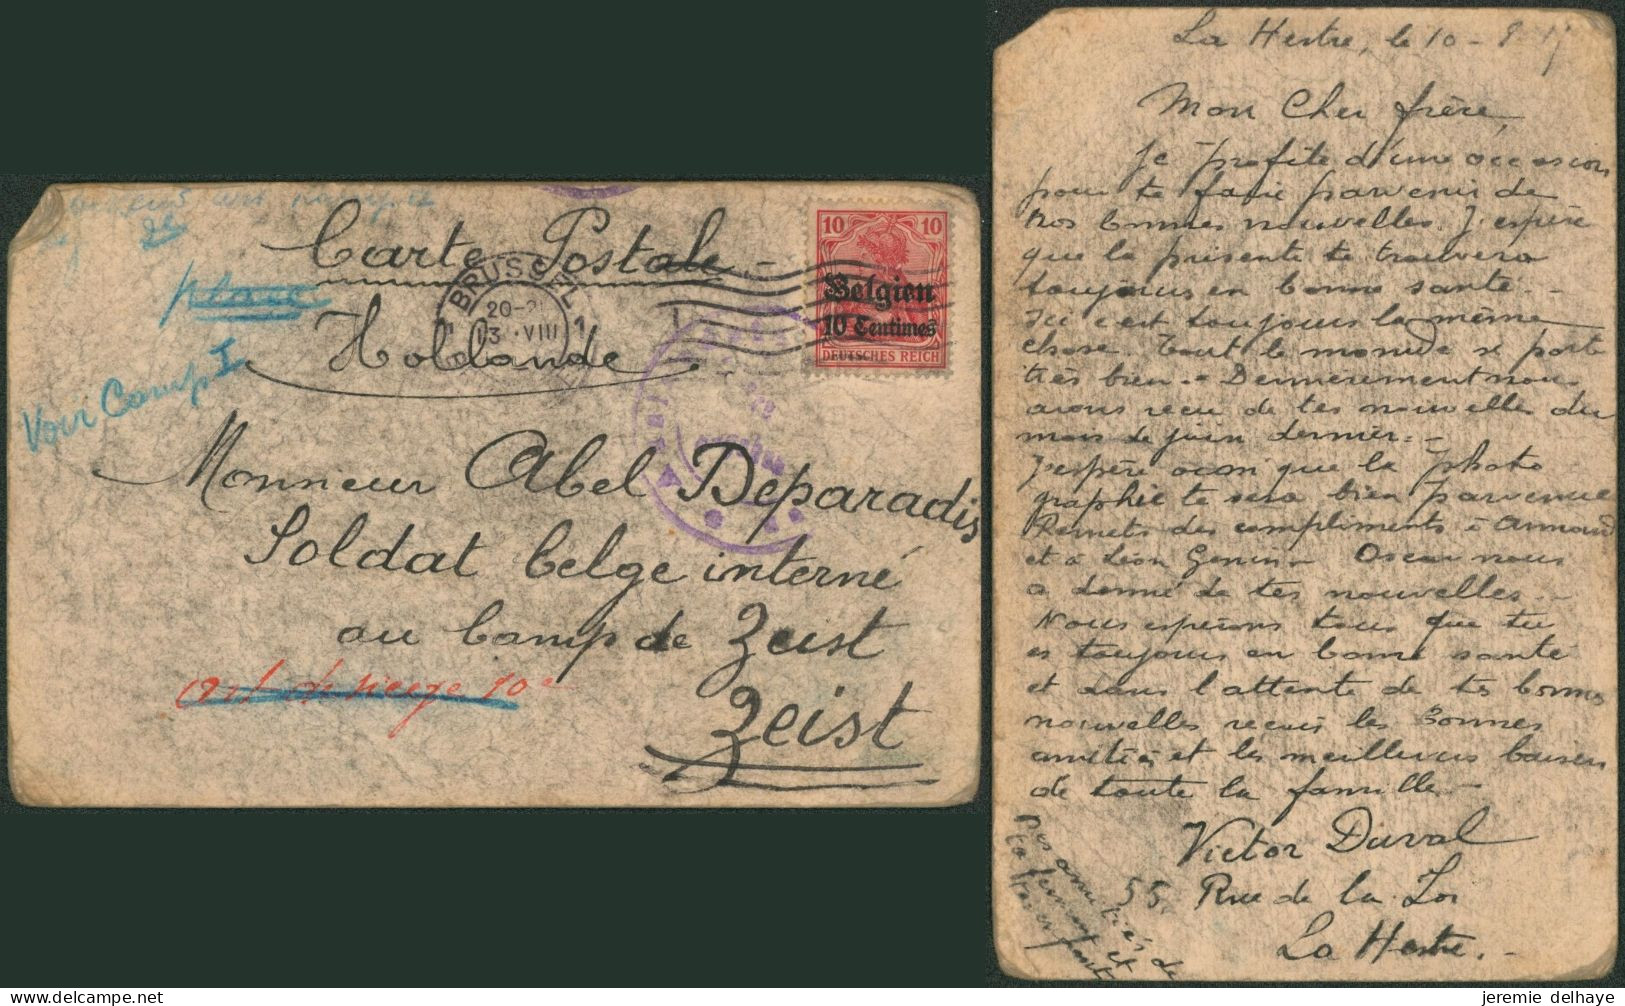 Guerre 14-18 - OC3 Sur Carte Postale à La Main Expédié De Bruxelles (1915) > Soldat Belge Interné Au Camp De Zeist - OC1/25 Generaal Gouvernement